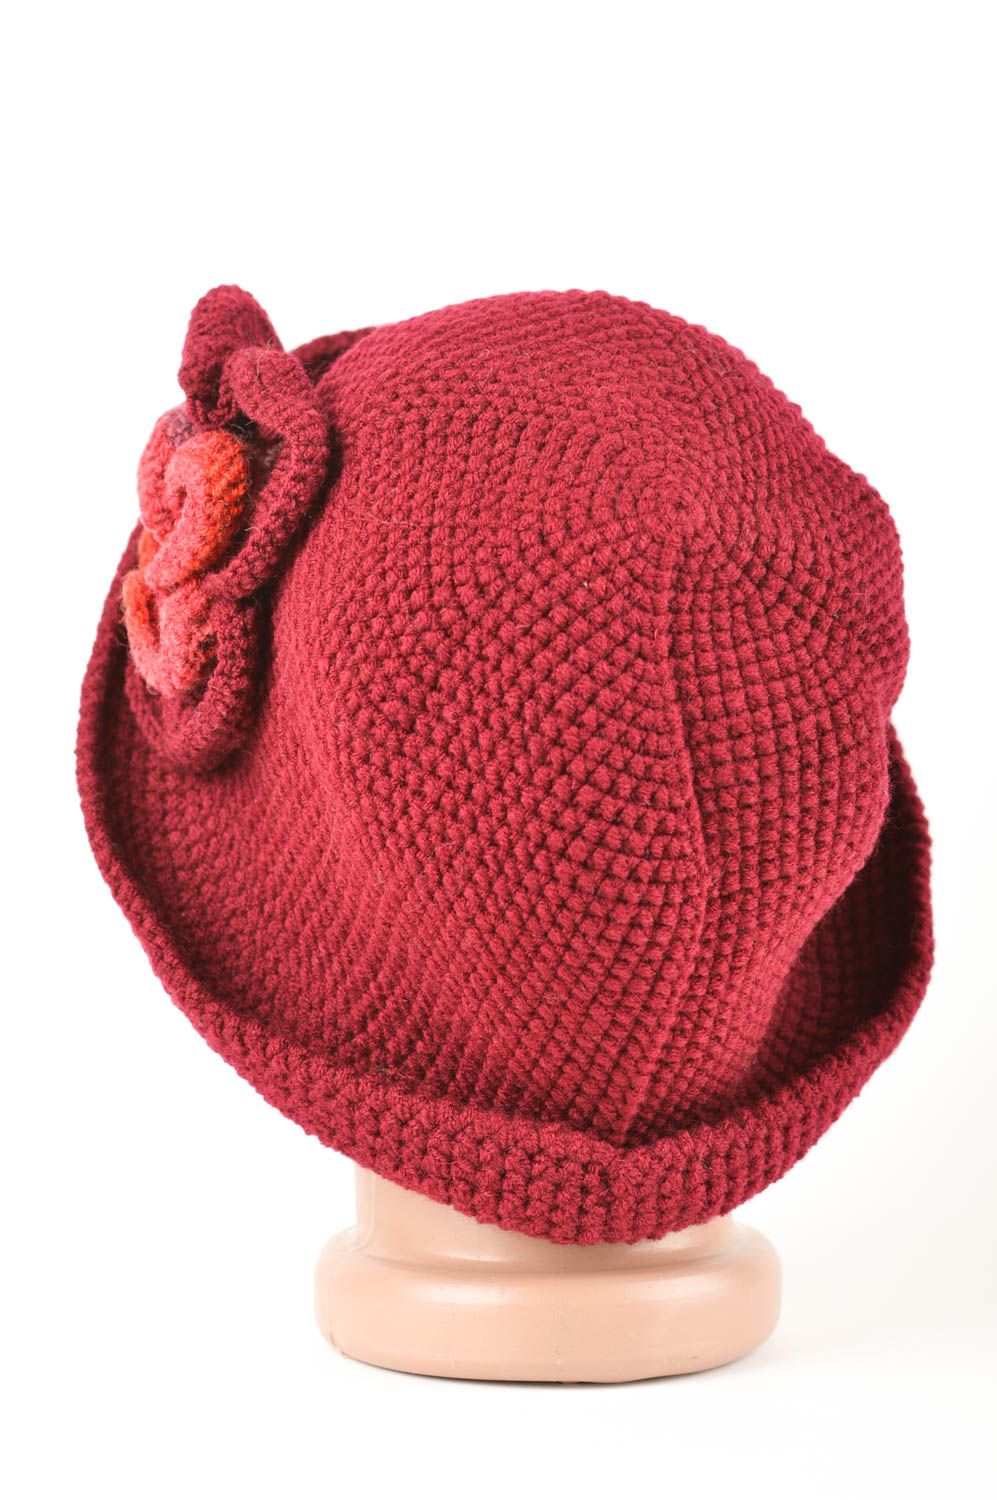 Bonnet tricot fait main Vêtement femme rouge foncé avec fleur Cadeau original photo 5